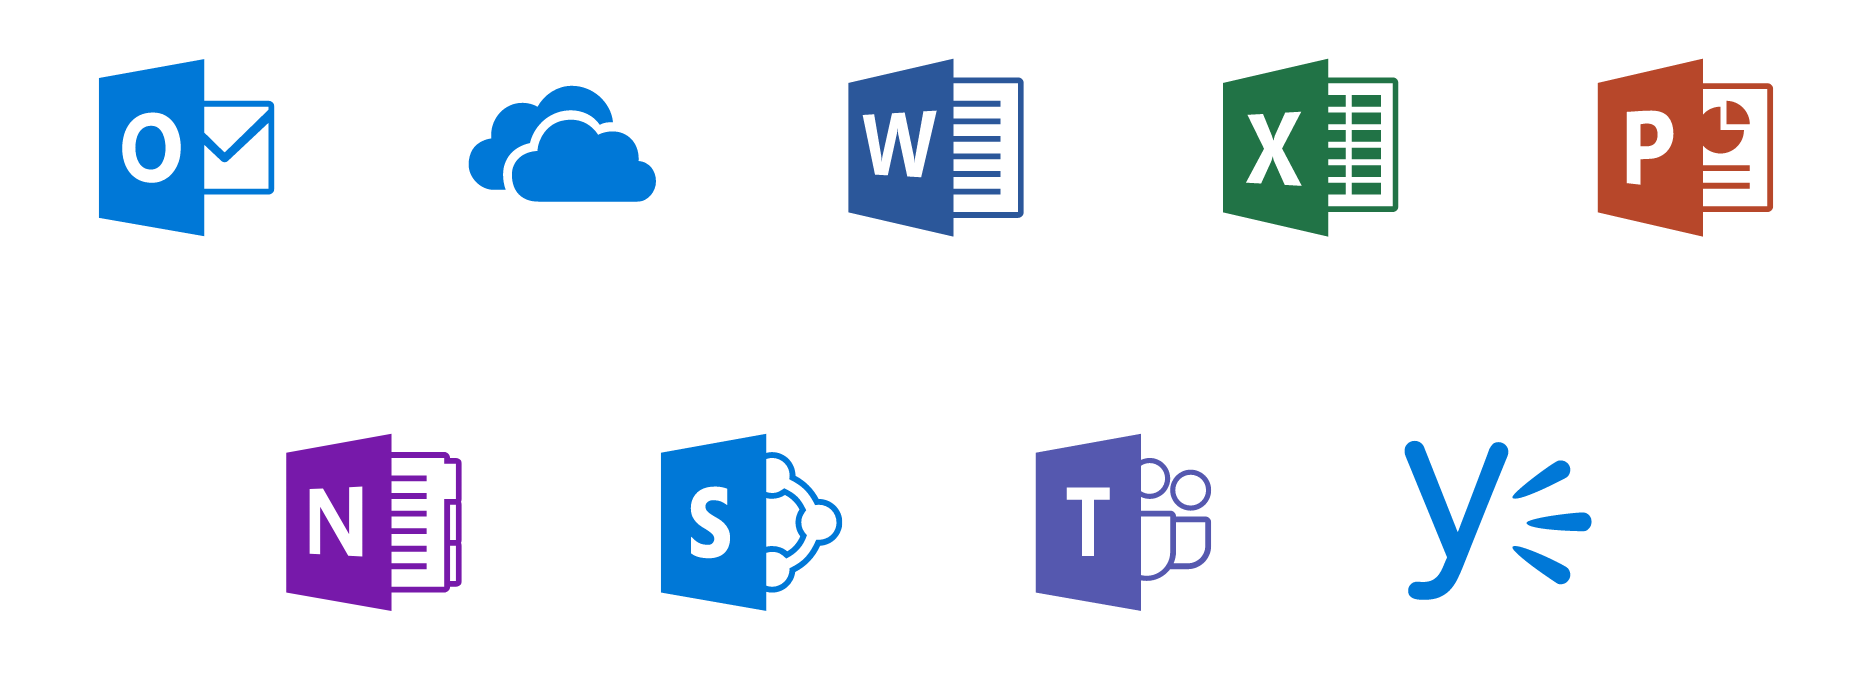 Apariencia Eliminación Lo dudo Microsoft Office 365 | Las herramientas que necesitas – Tekins